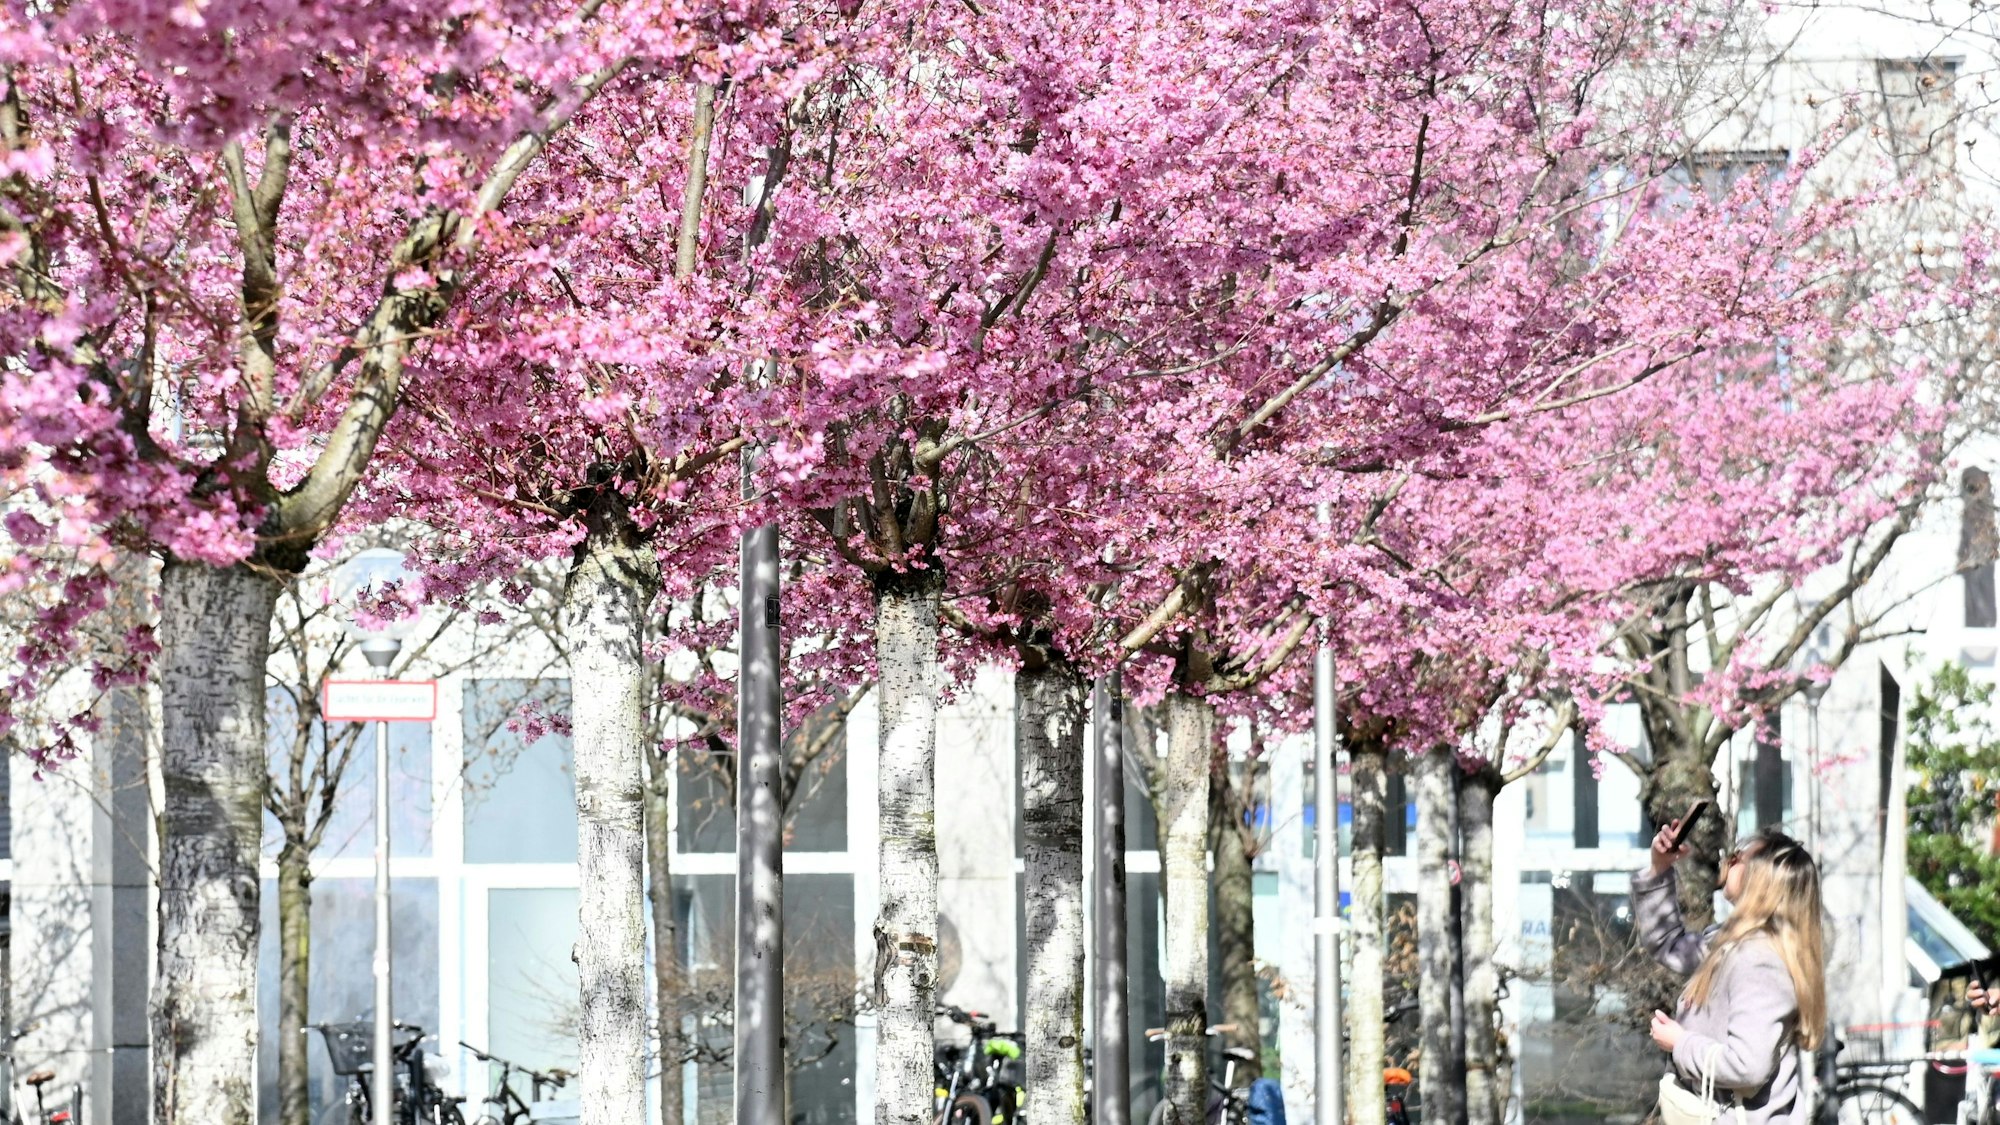 Kirschblütenbäume in Reihe, eine Frau fotografiert mit ihrem Smartphone die Blüten